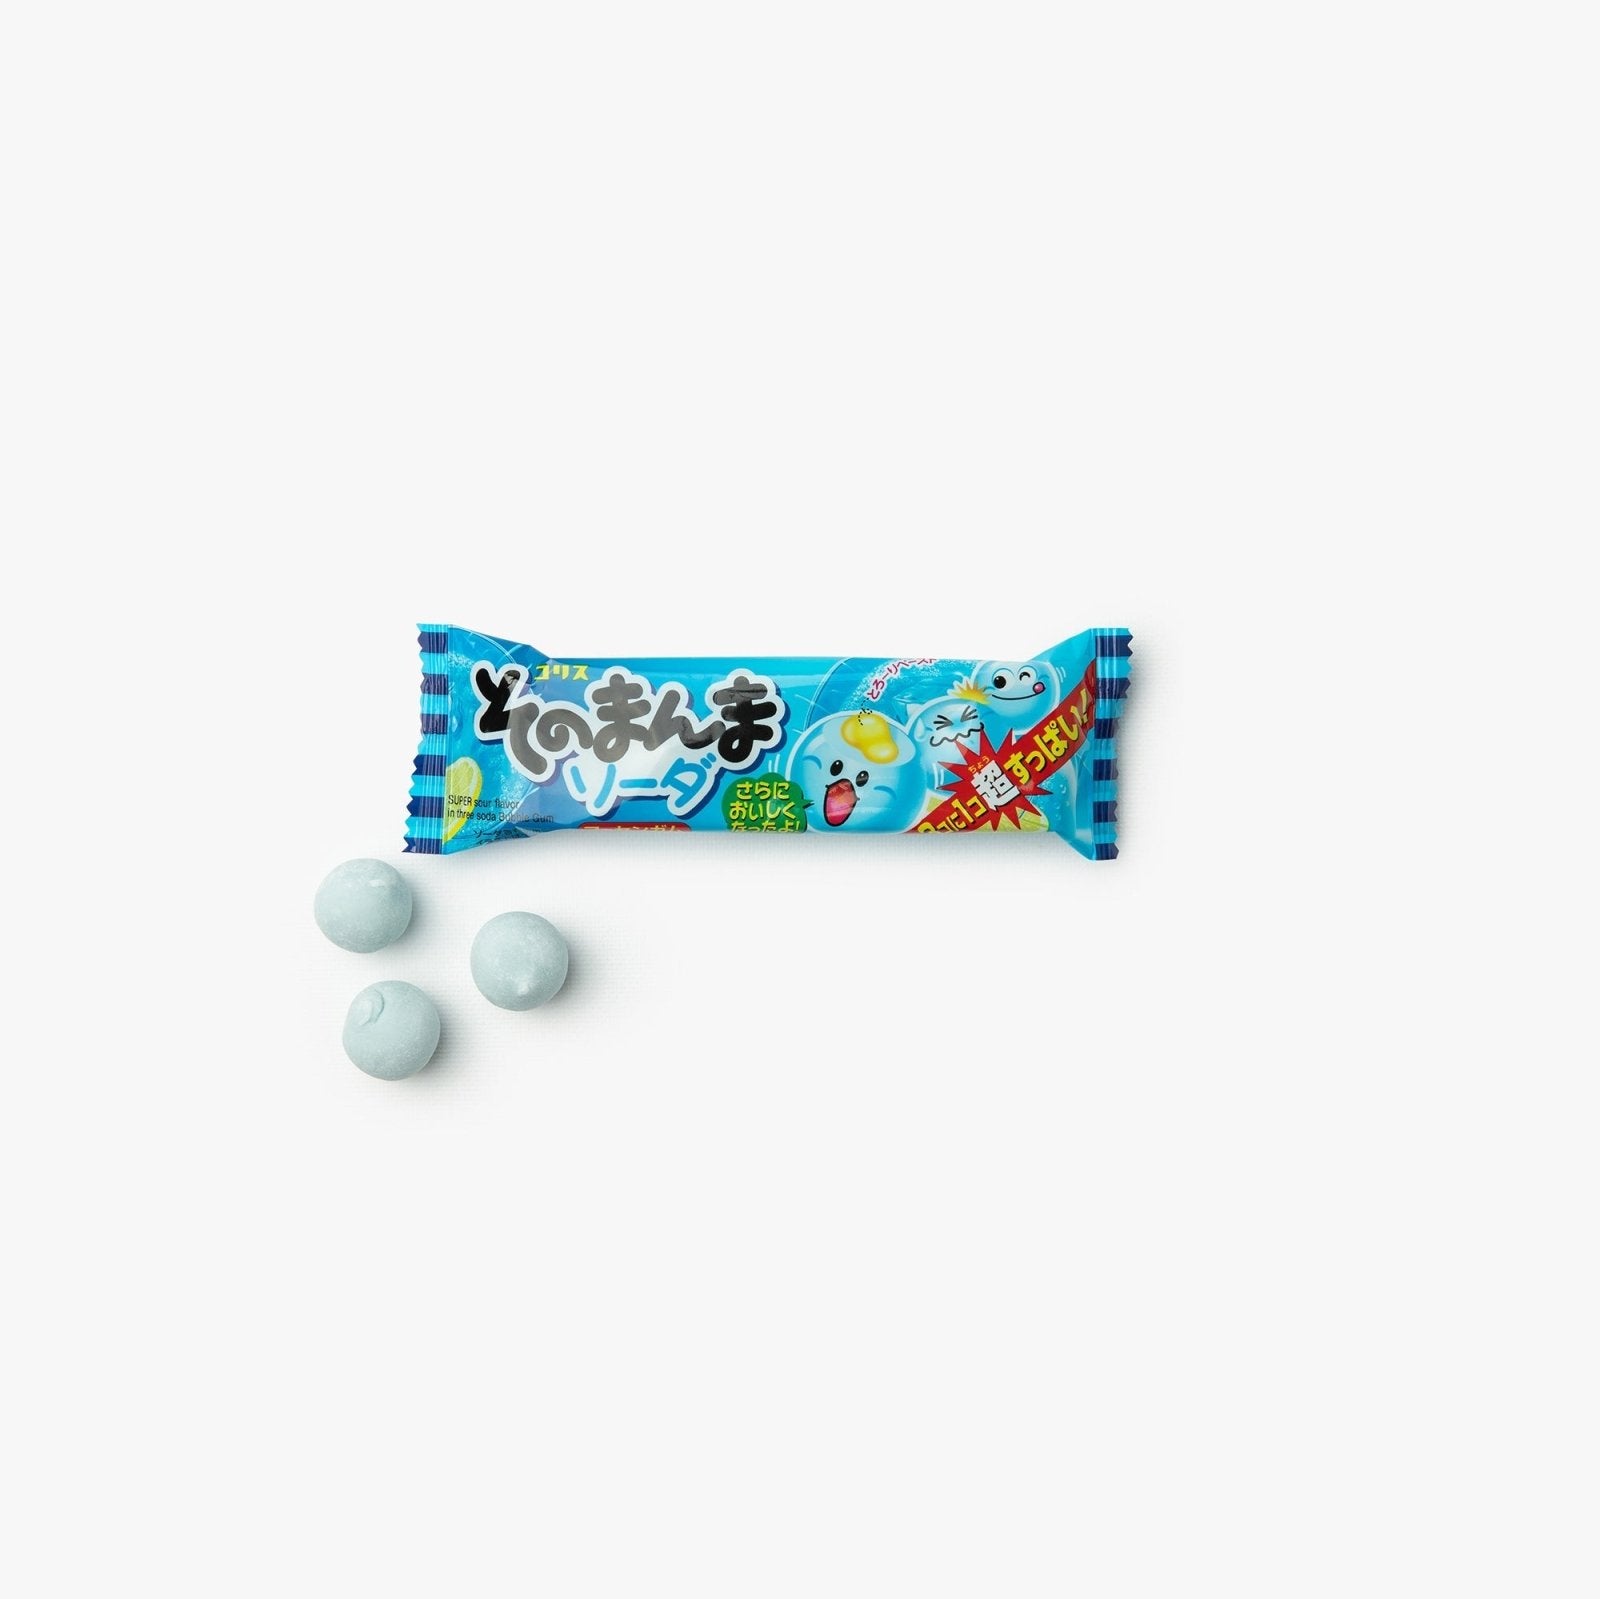 Chewing gum cœur fondant au soda - 14g - Coris - iRASSHAi